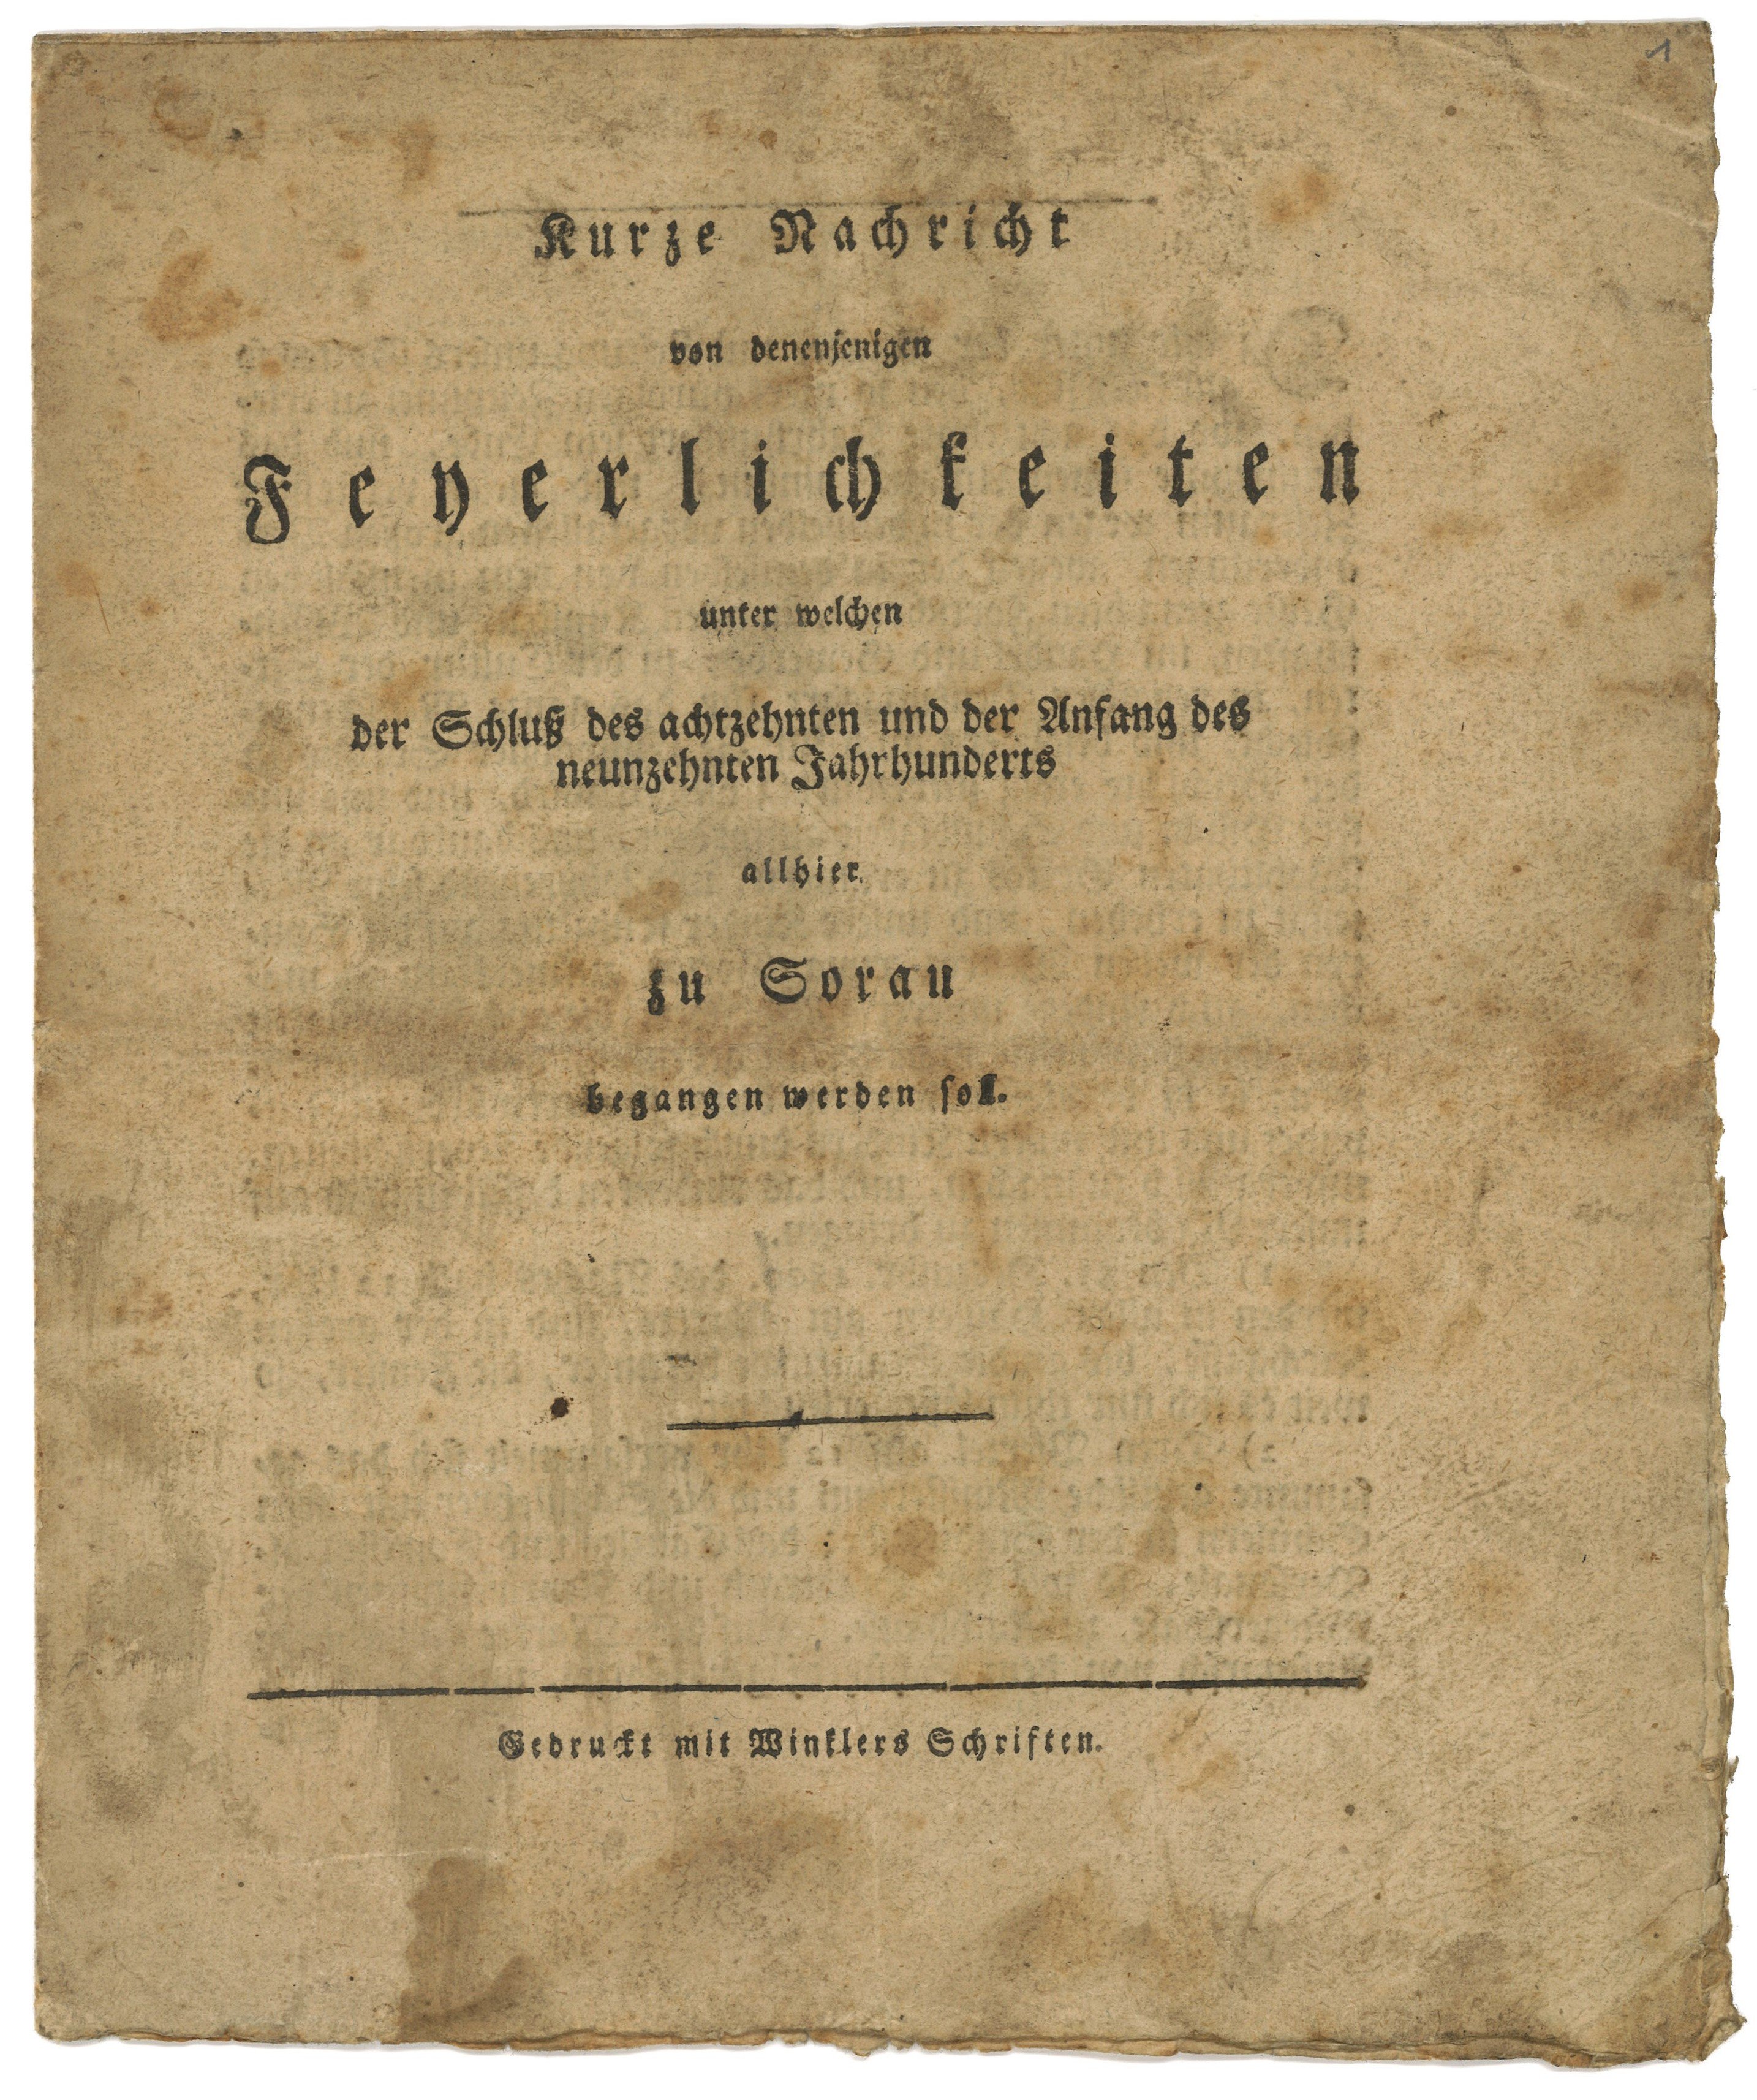 Ablaufplan für die Feierlichkeiten zum Jahrhundertwechsel in Sorau 1800/1801 (Landesgeschichtliche Vereinigung für die Mark Brandenburg e.V., Archiv CC BY)